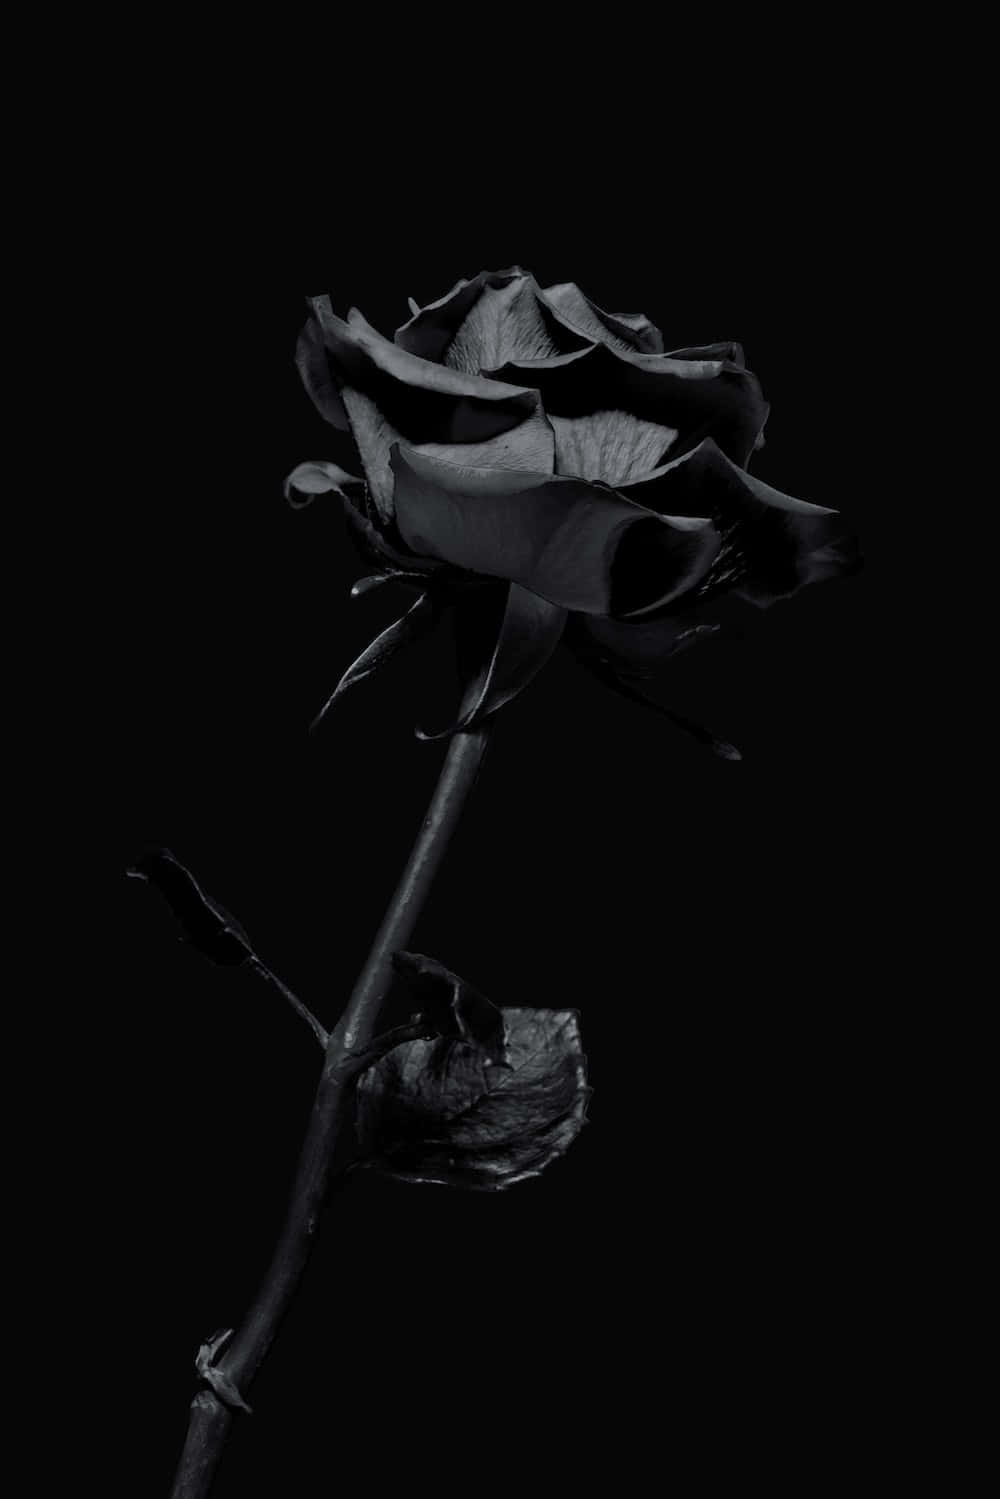 Imagemde Uma Rosa Preta Escura.